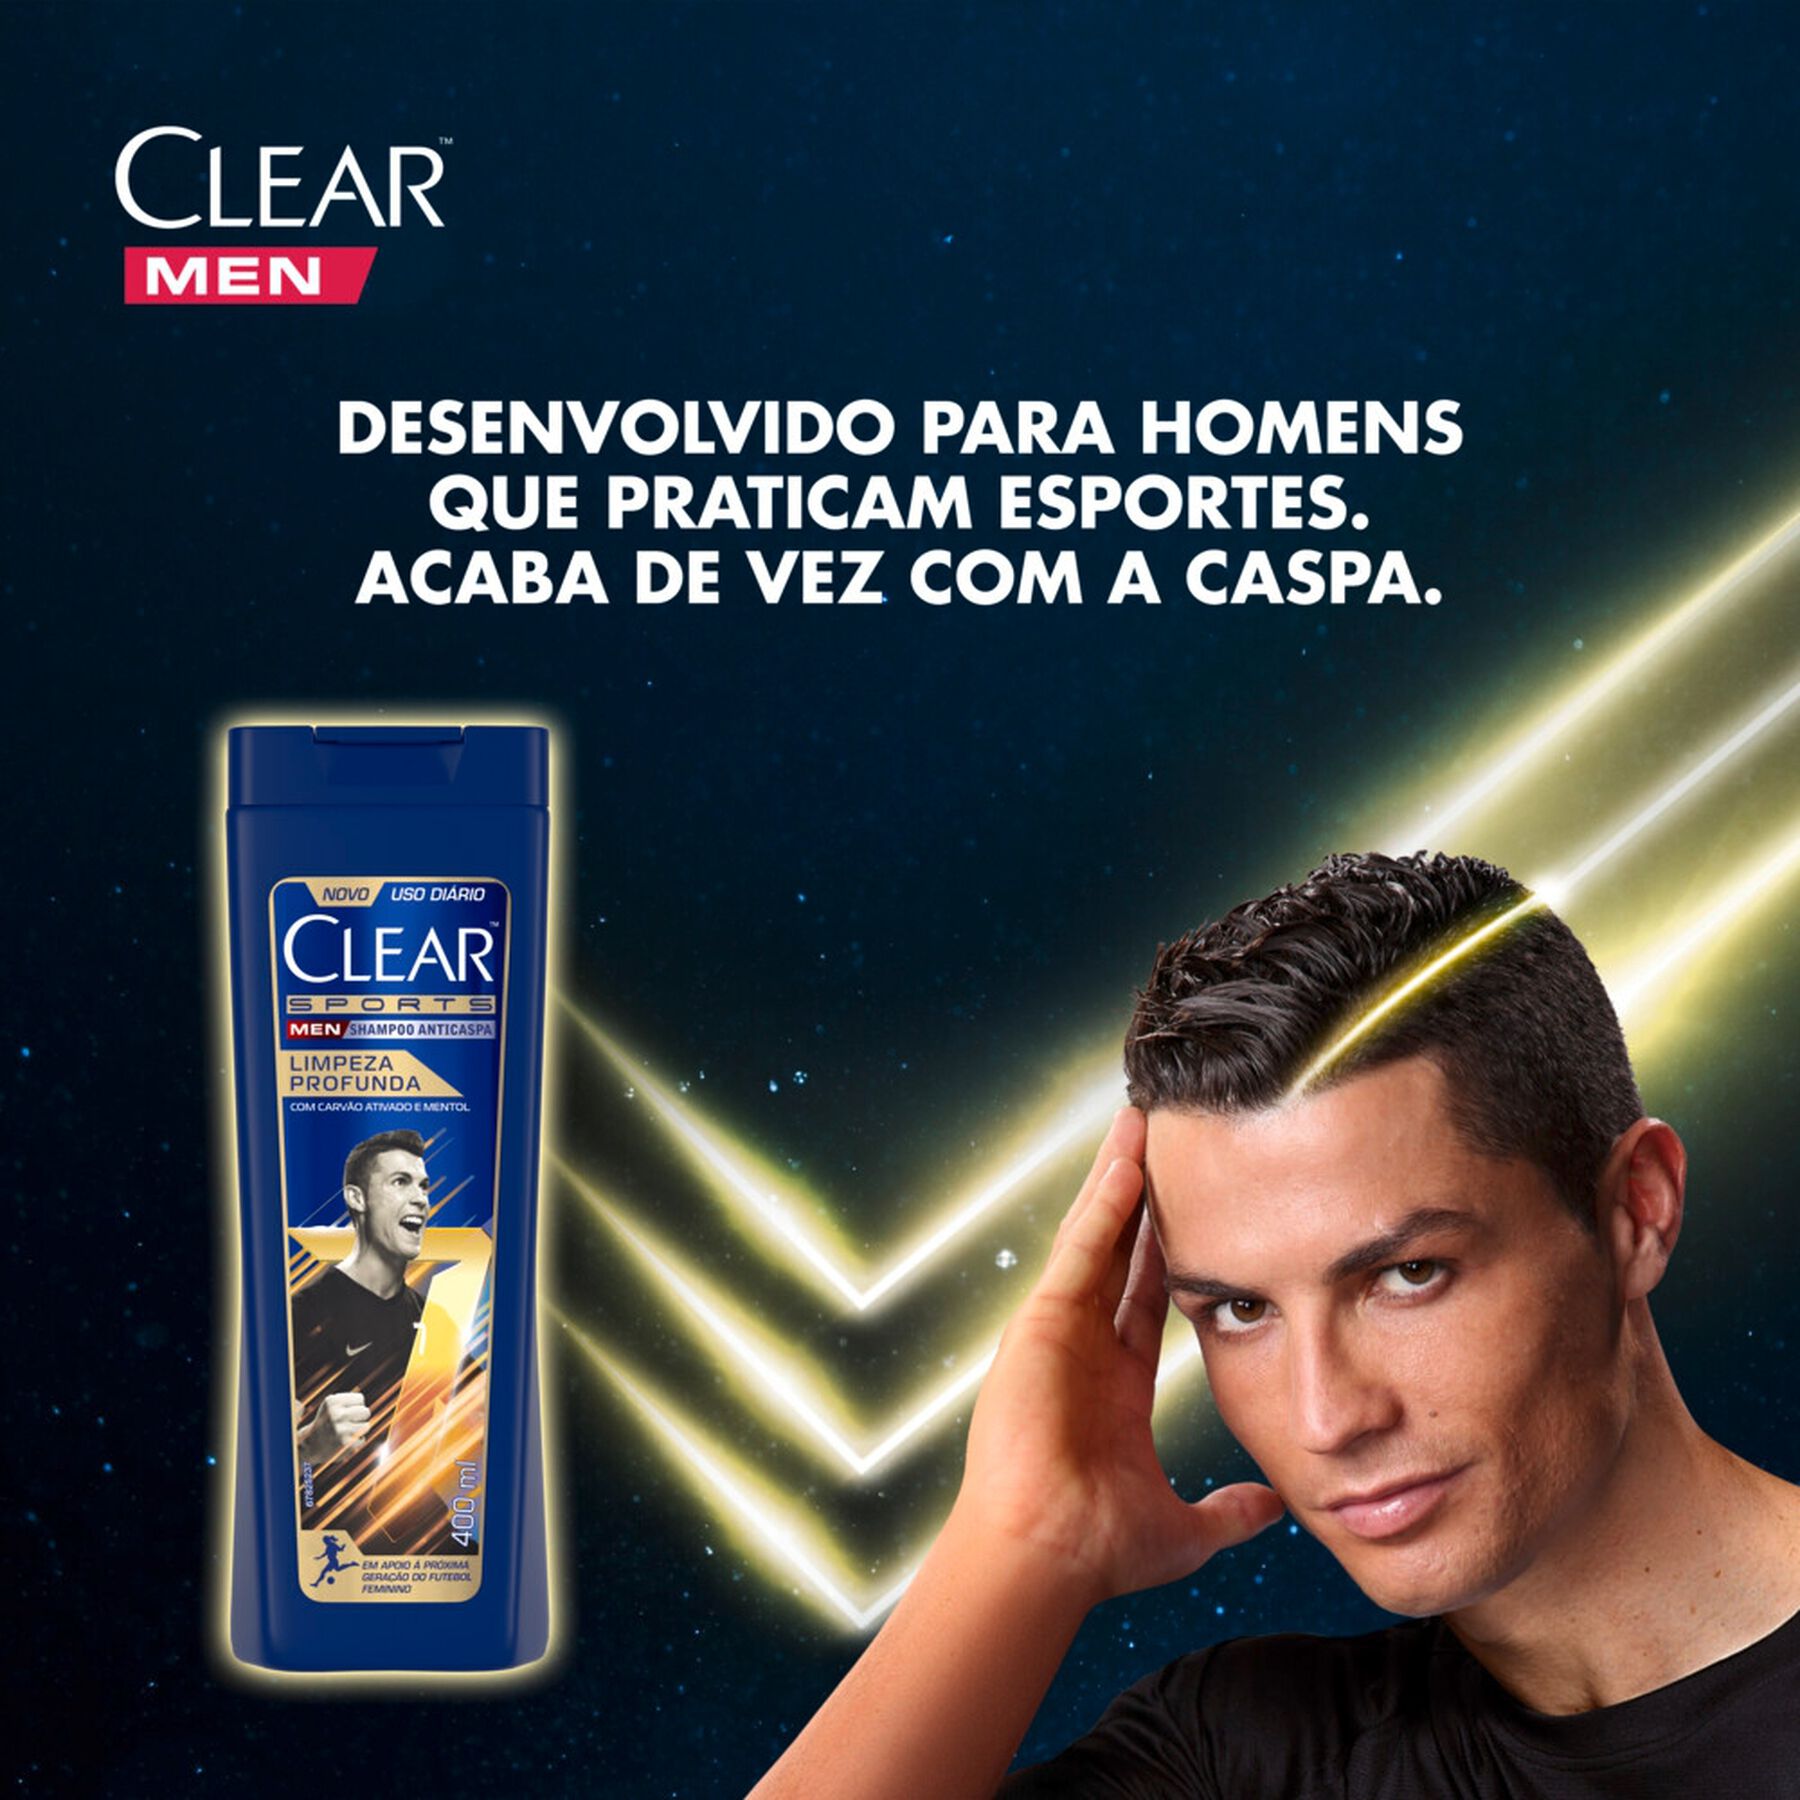 Shampoo Anticaspa Clear Men Sports Cristiano Ronaldo Limpeza Profunda 400 ml